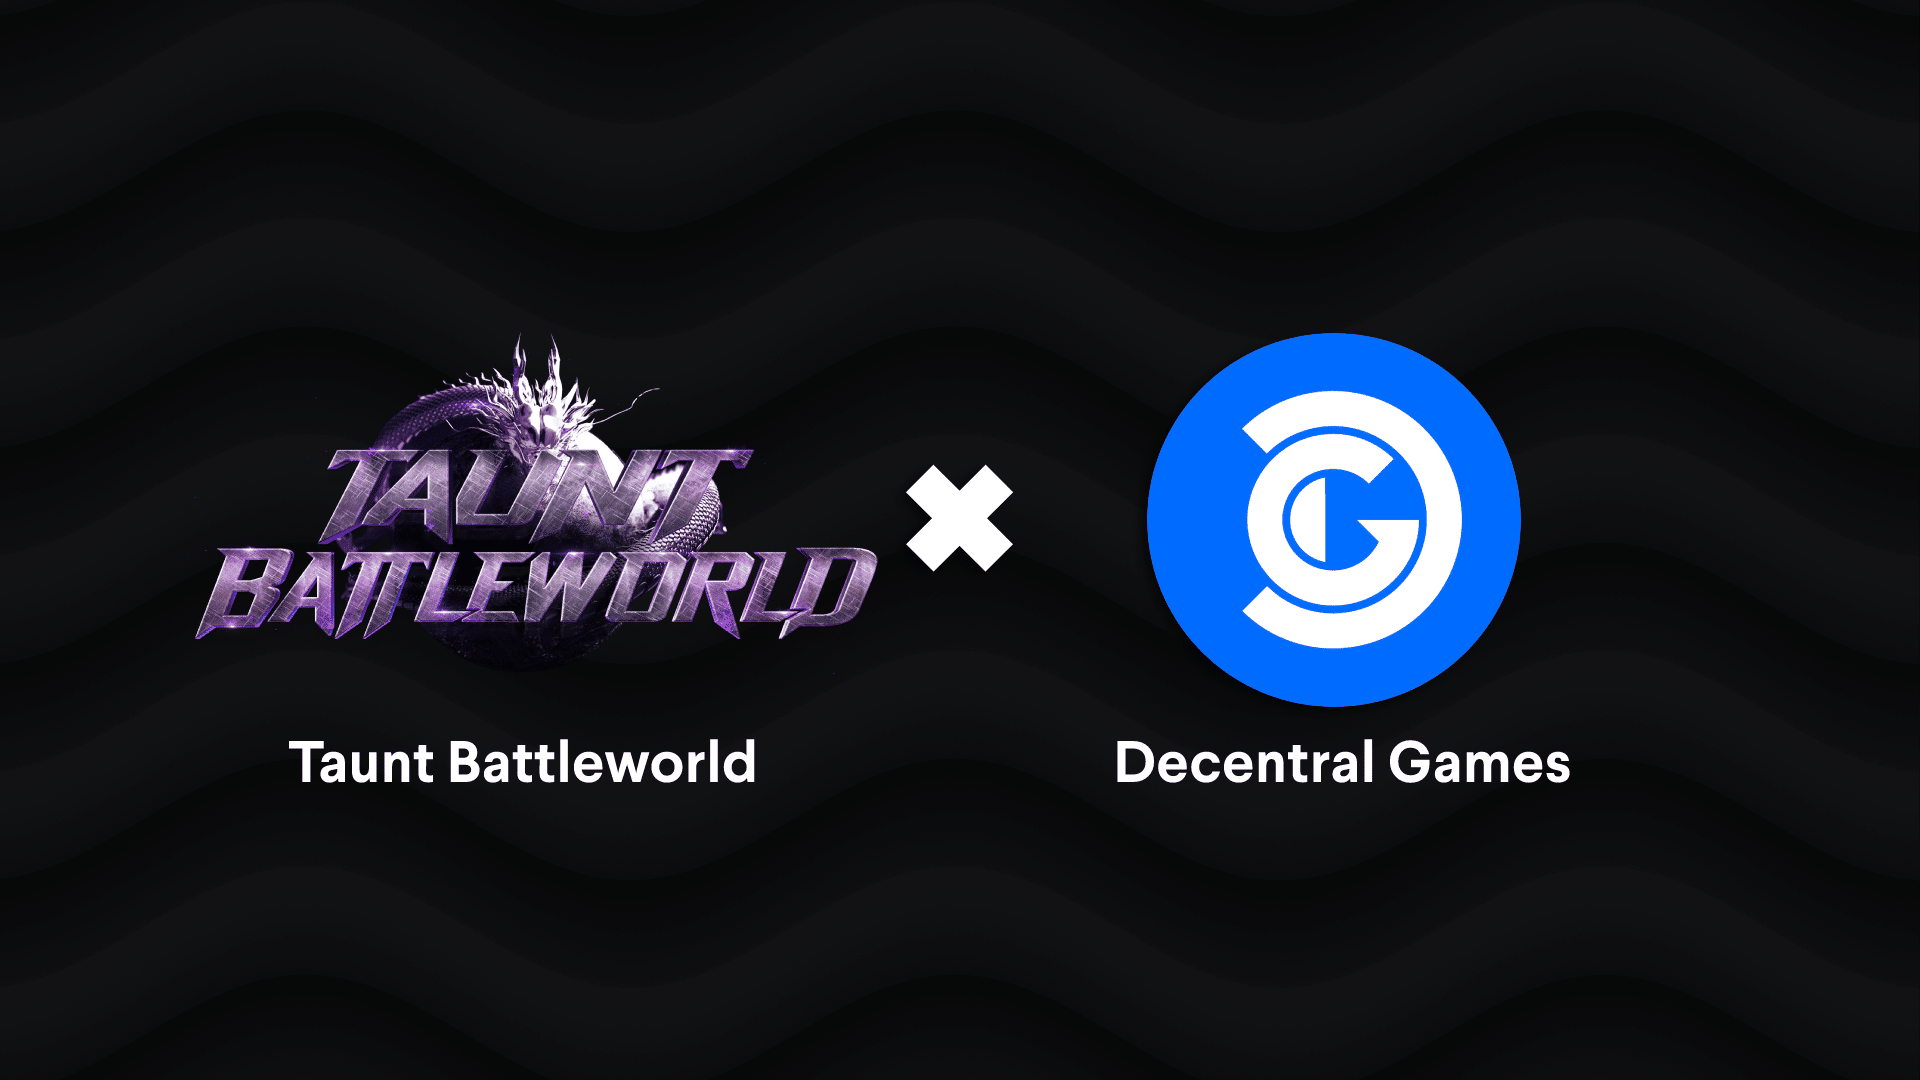 Taunt Battleworld and Decentral Games logos